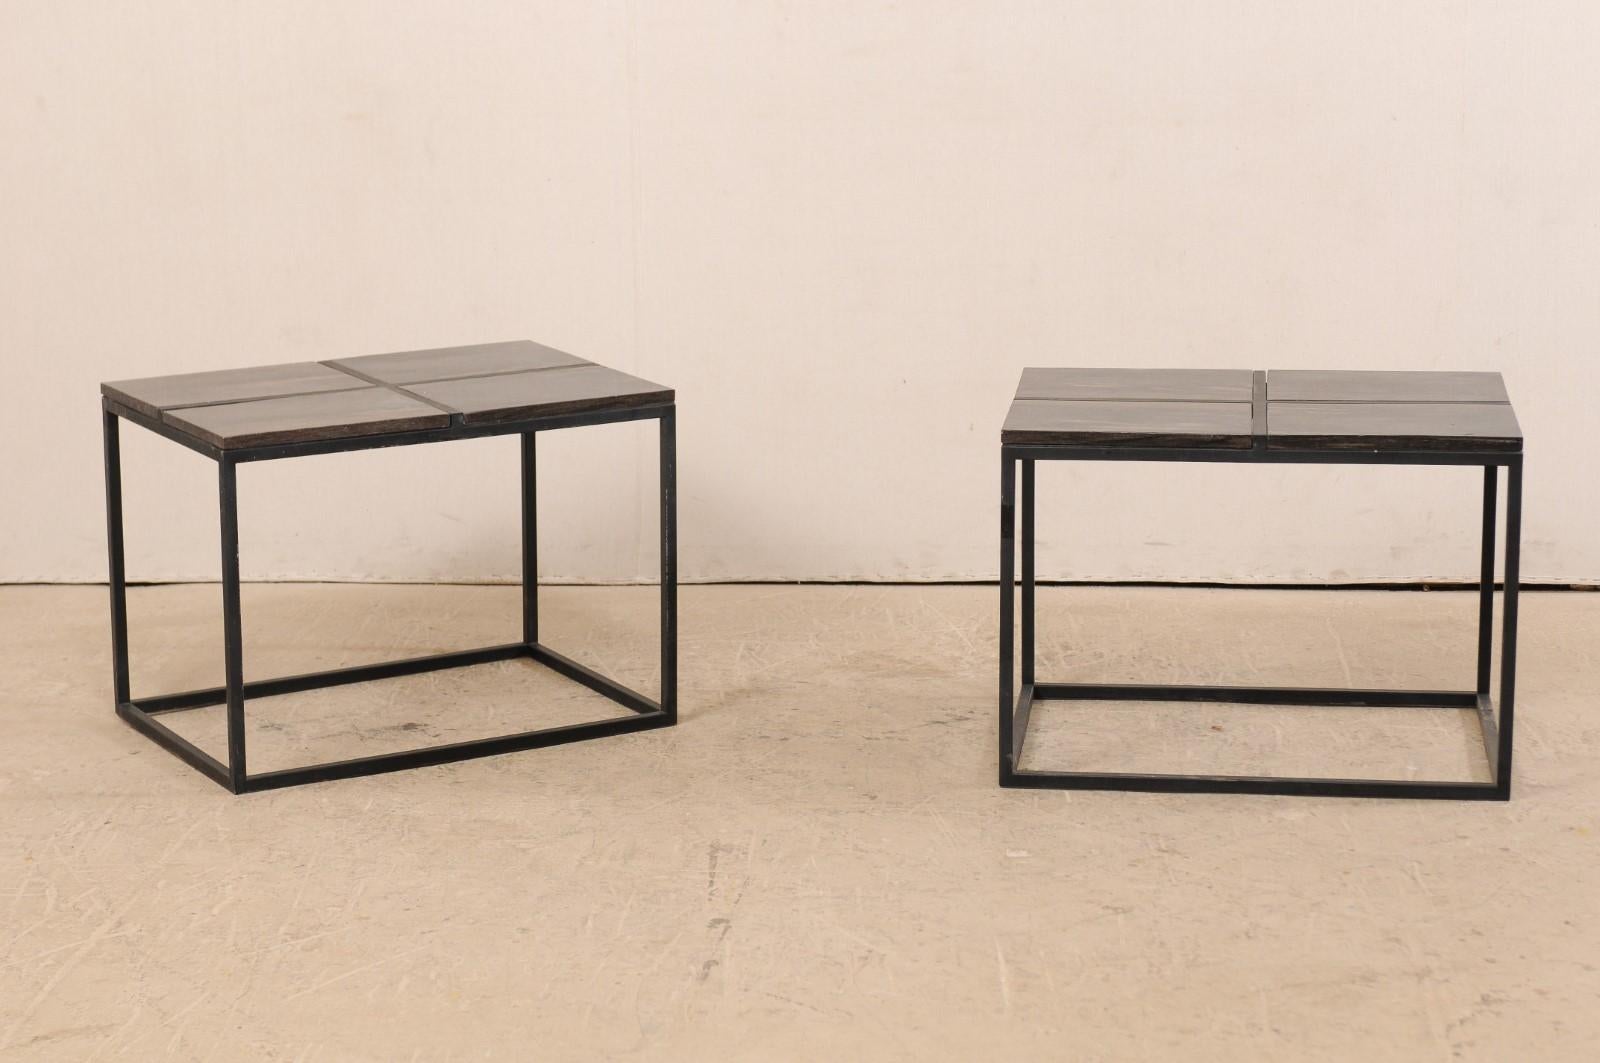 Une paire de tables basses en bois pétrifié de style moderne. Cette paire de tables basses comprend chacune quatre pièces de bois pétrifié de forme rectangulaire encastrées dans un cadre, formant un plateau de forme rectangulaire. Les sommets